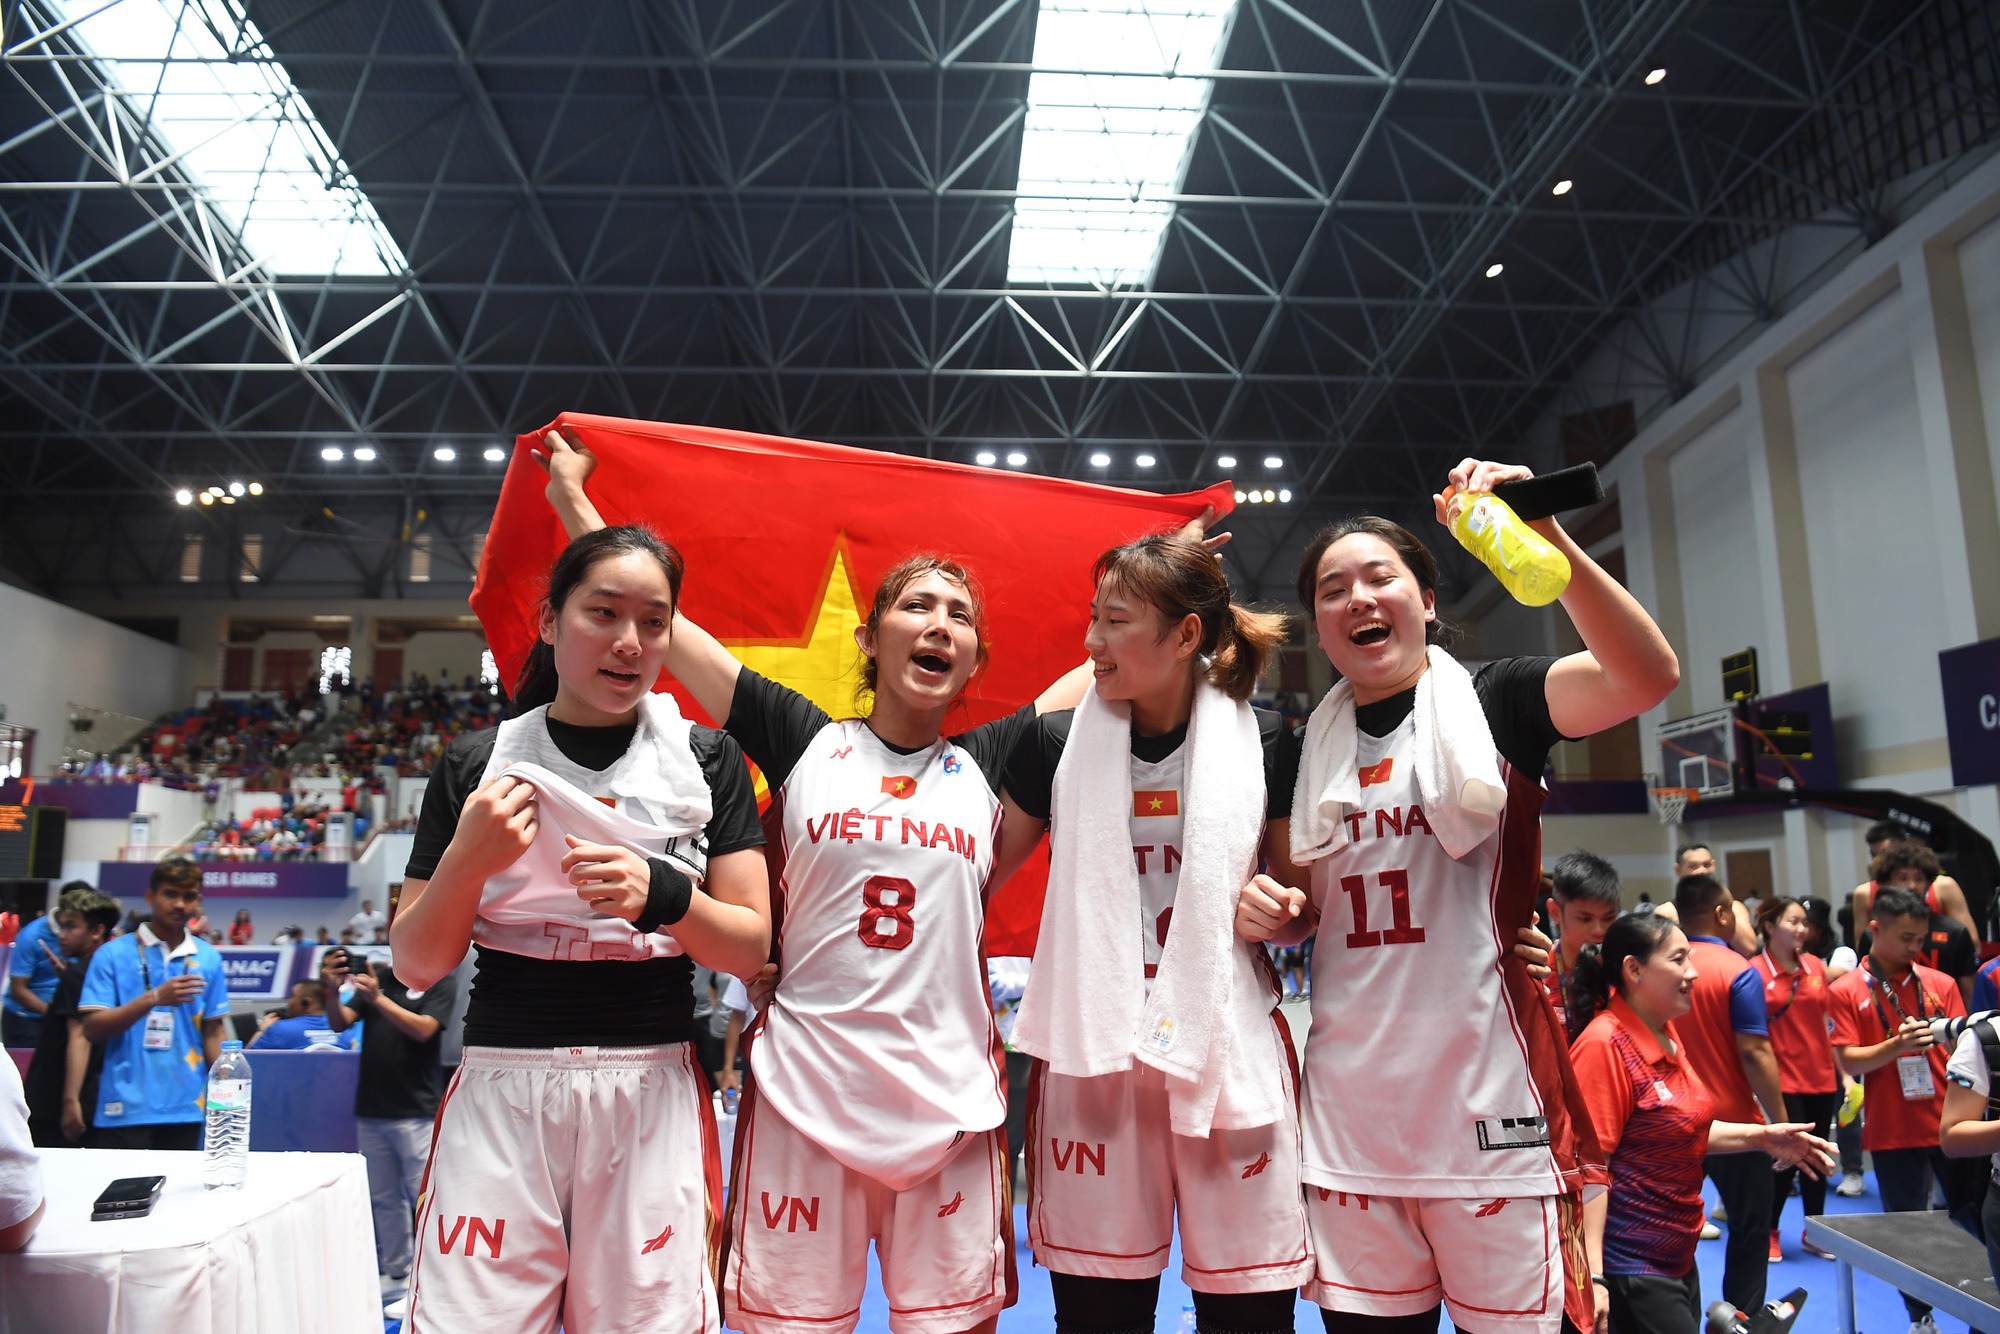 Trương Twins tỏa sáng giúp bóng rổ Việt Nam tạo địa chấn - Ảnh 1.